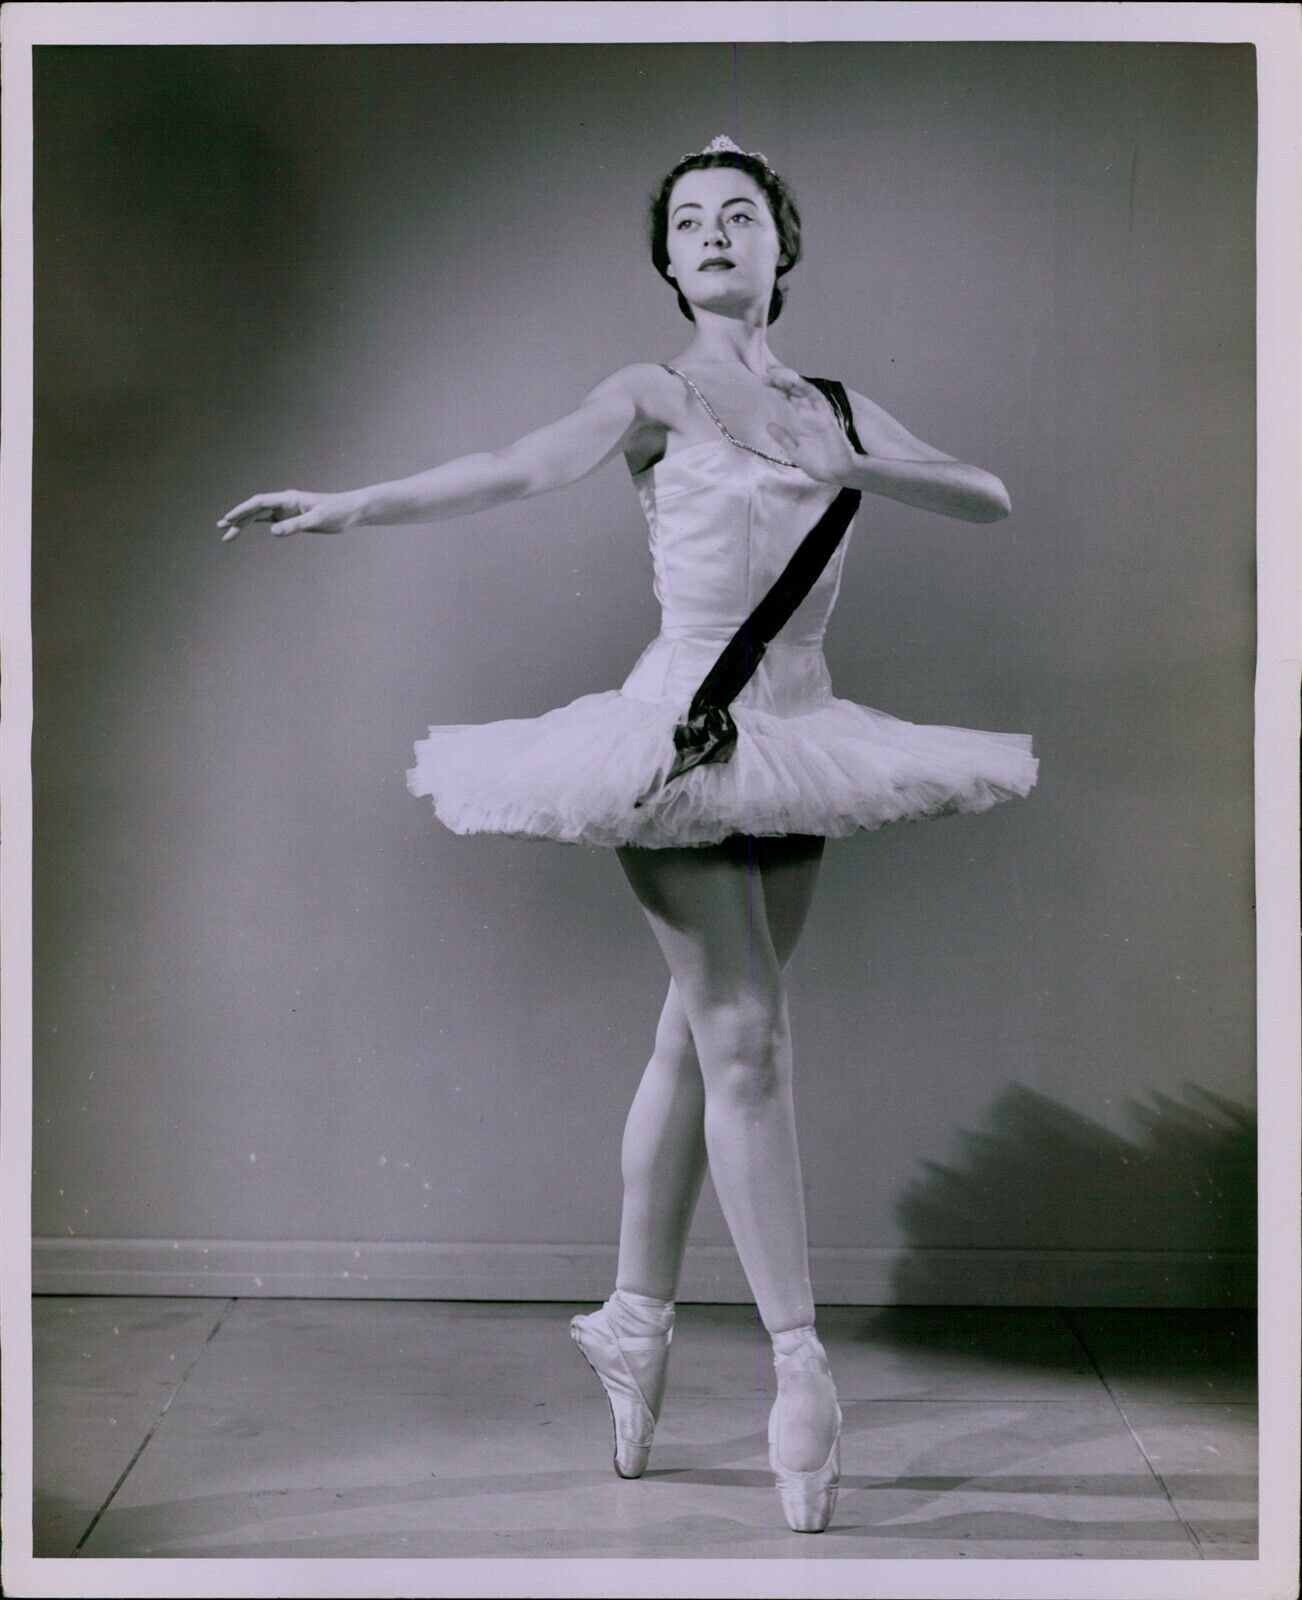 LG808 60s Original Ewing Galloway Photo GRACEFUL BALLERINA Leggy Ballet Dancer